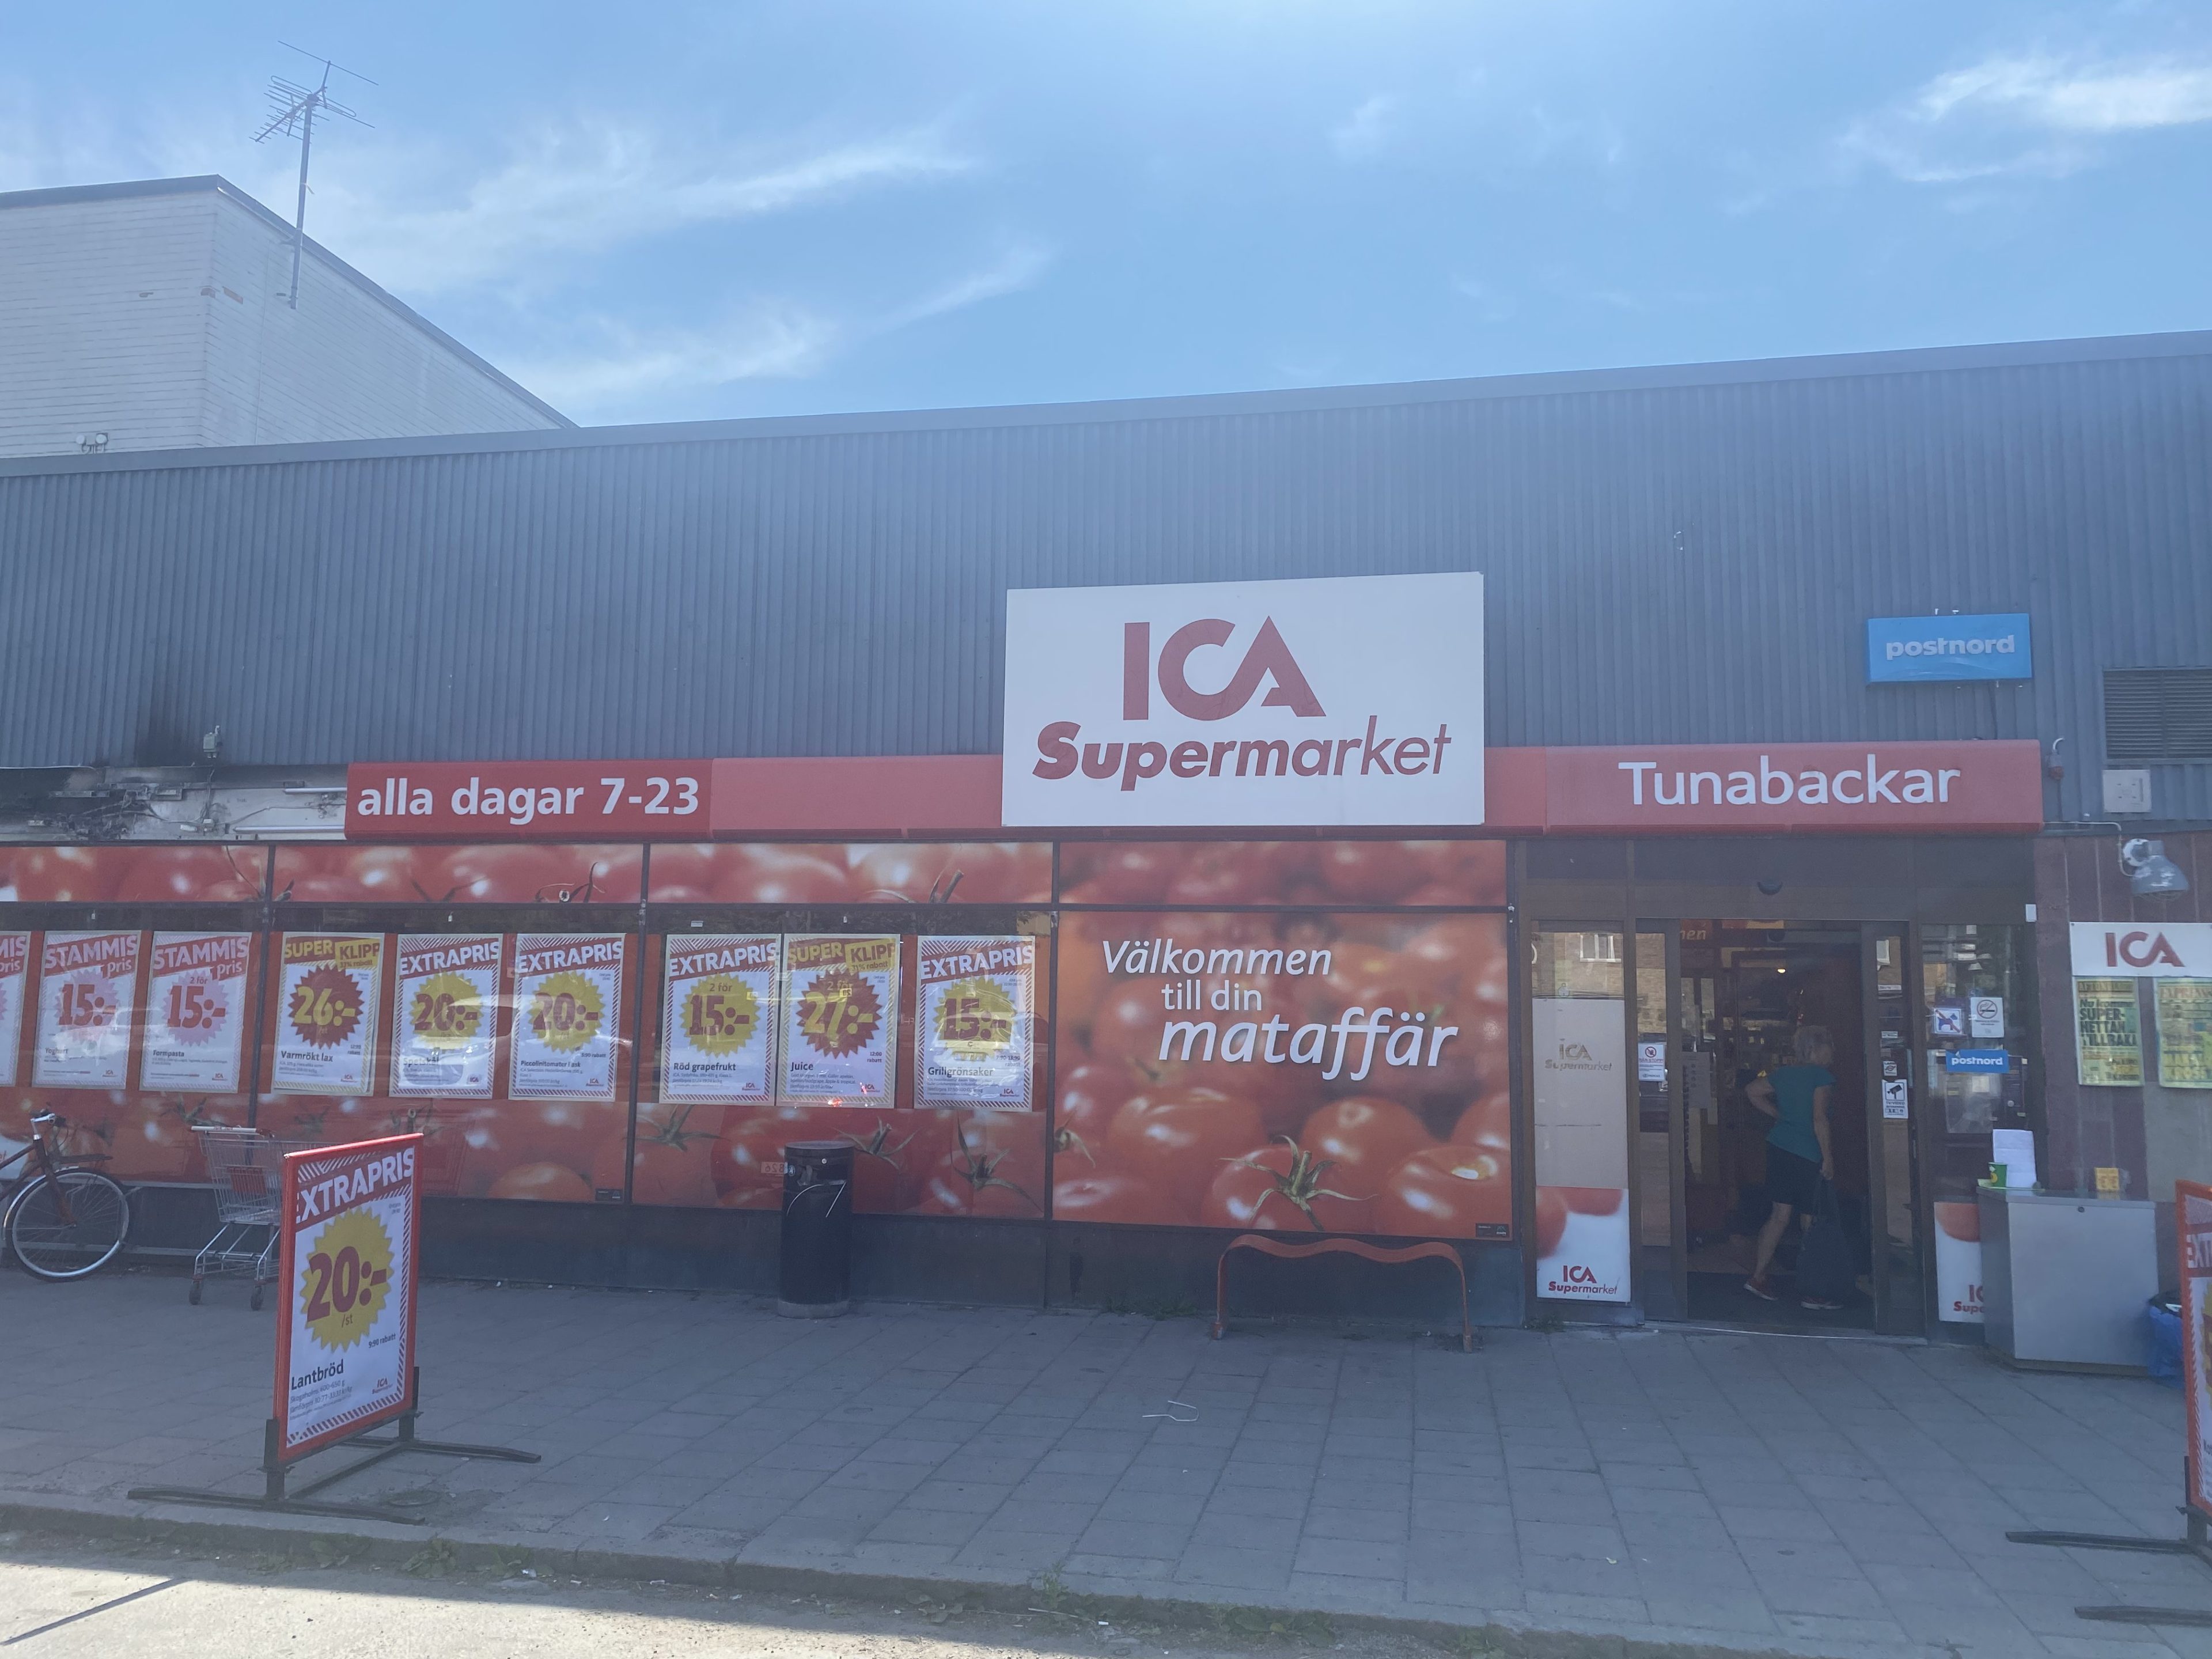 ICA Supermarket Tunabackar